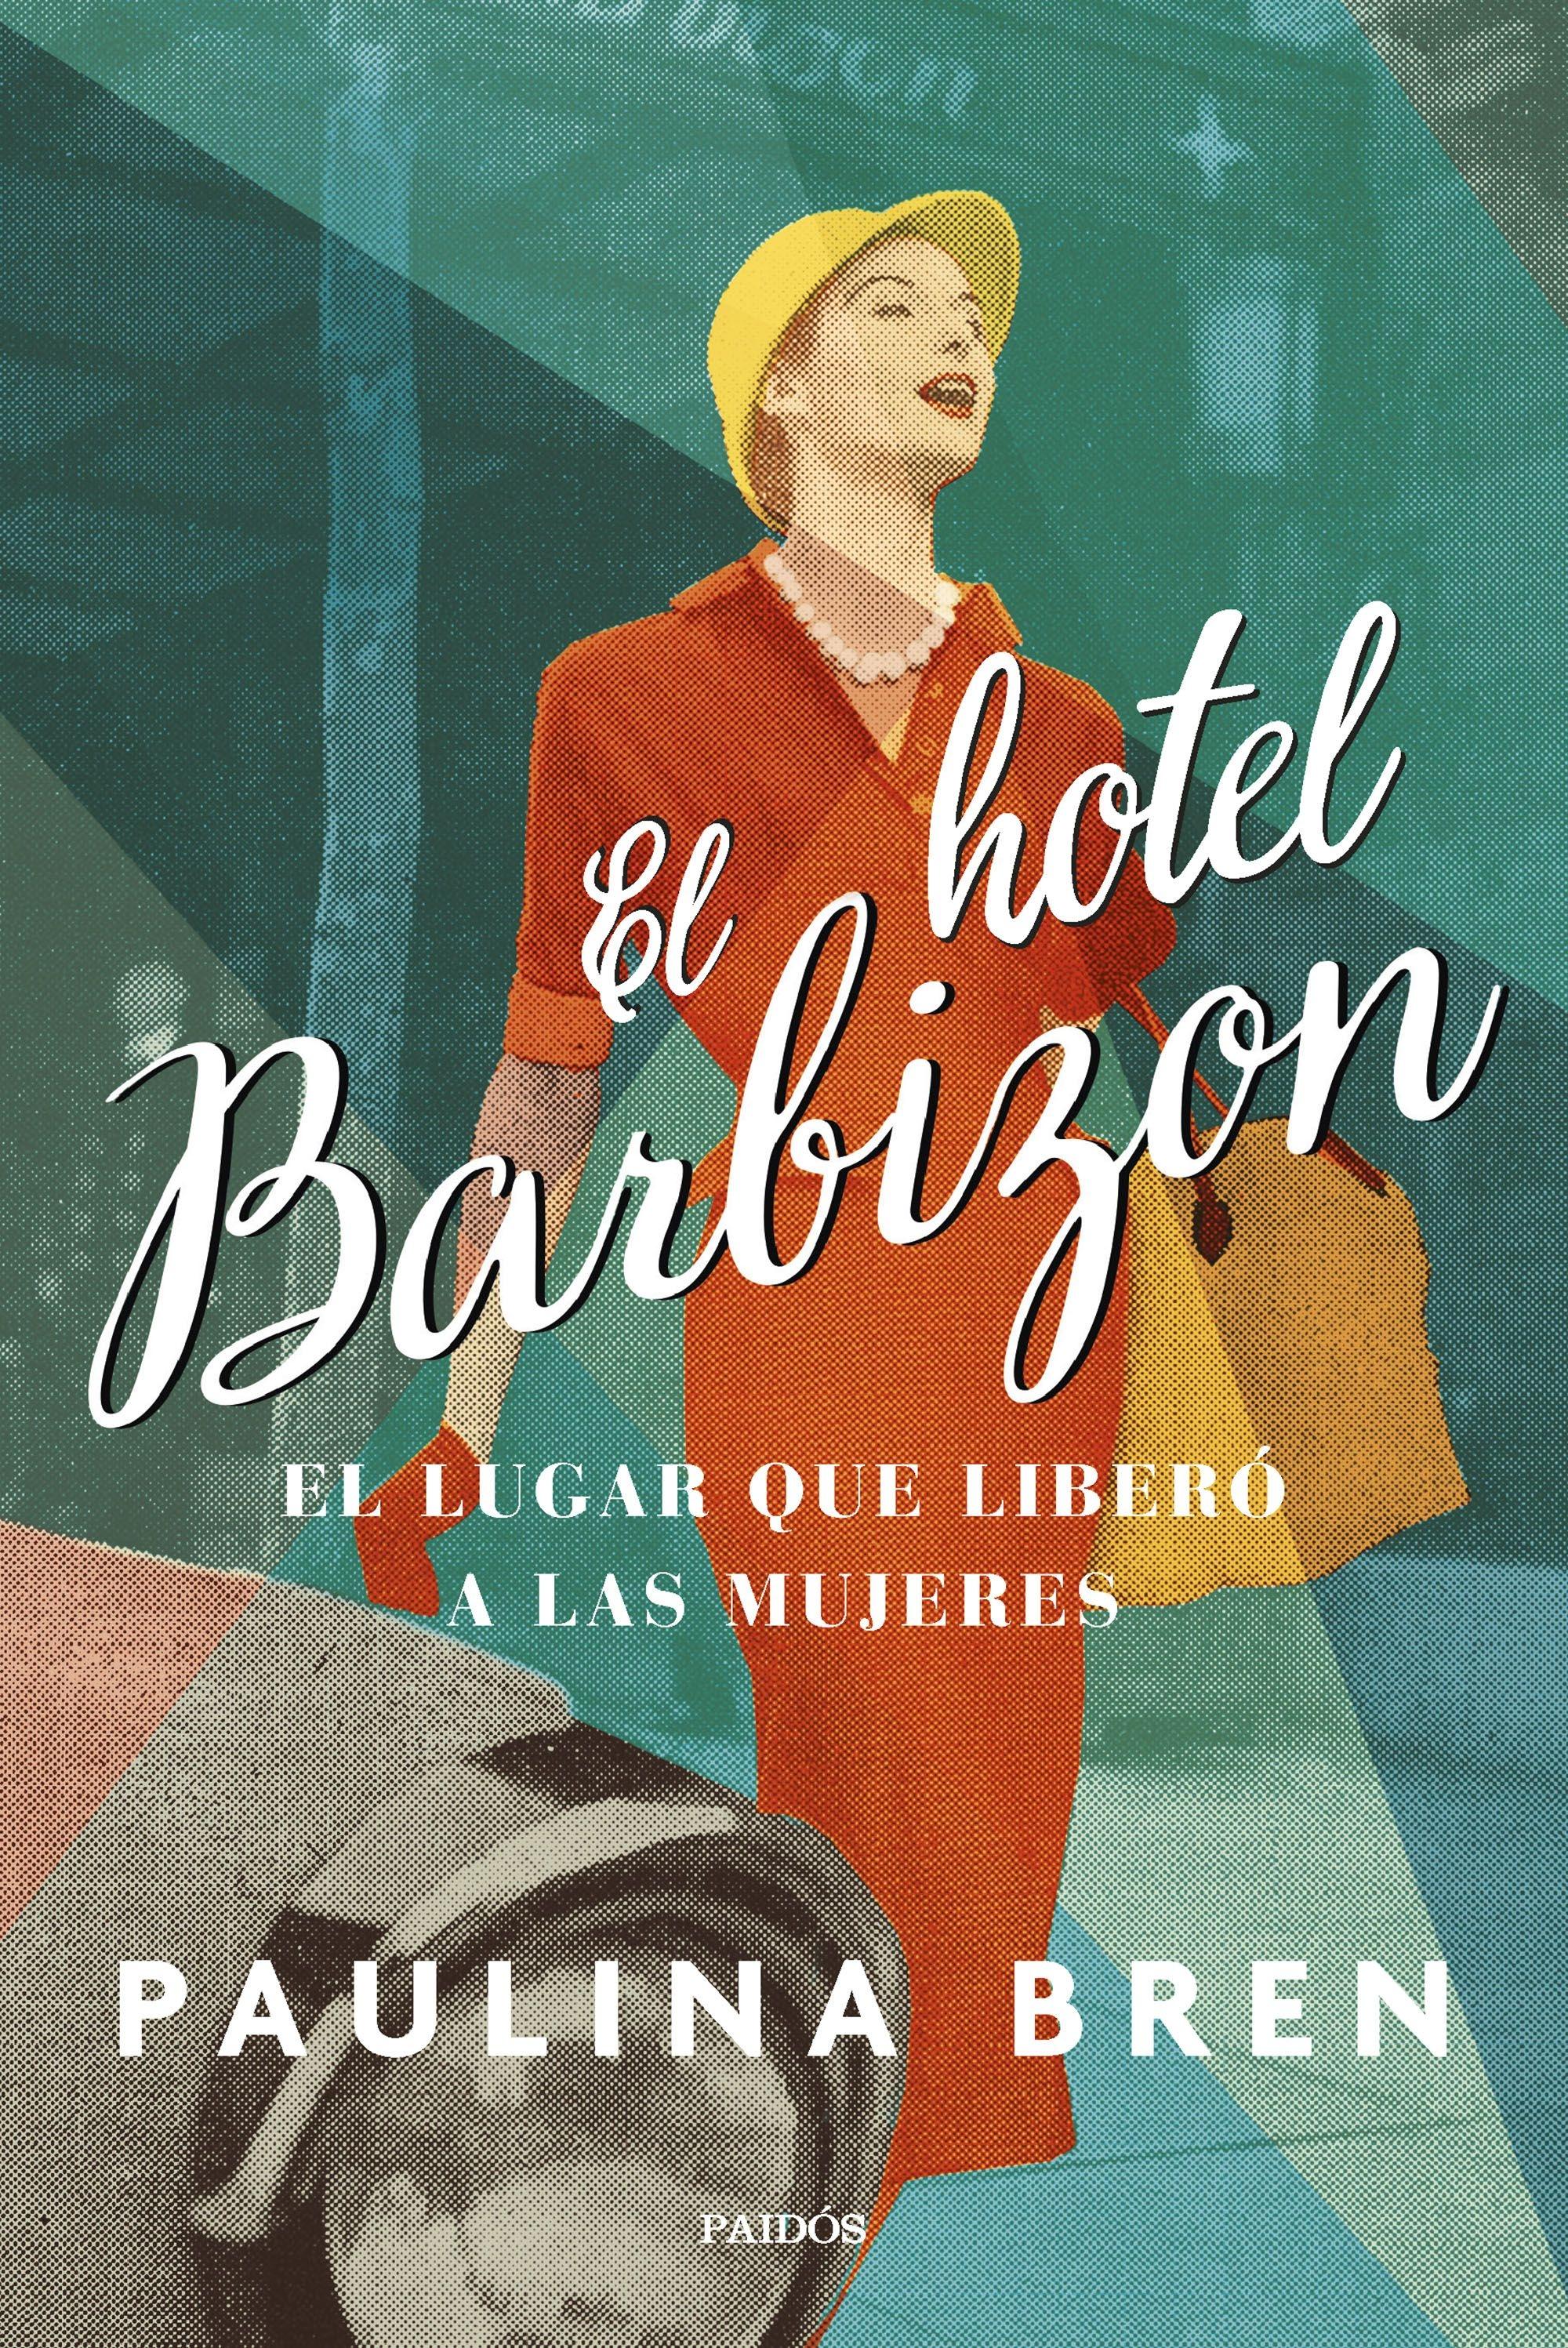 El Hotel Barbizon "El Lugar que Liberó a las Mujeres"